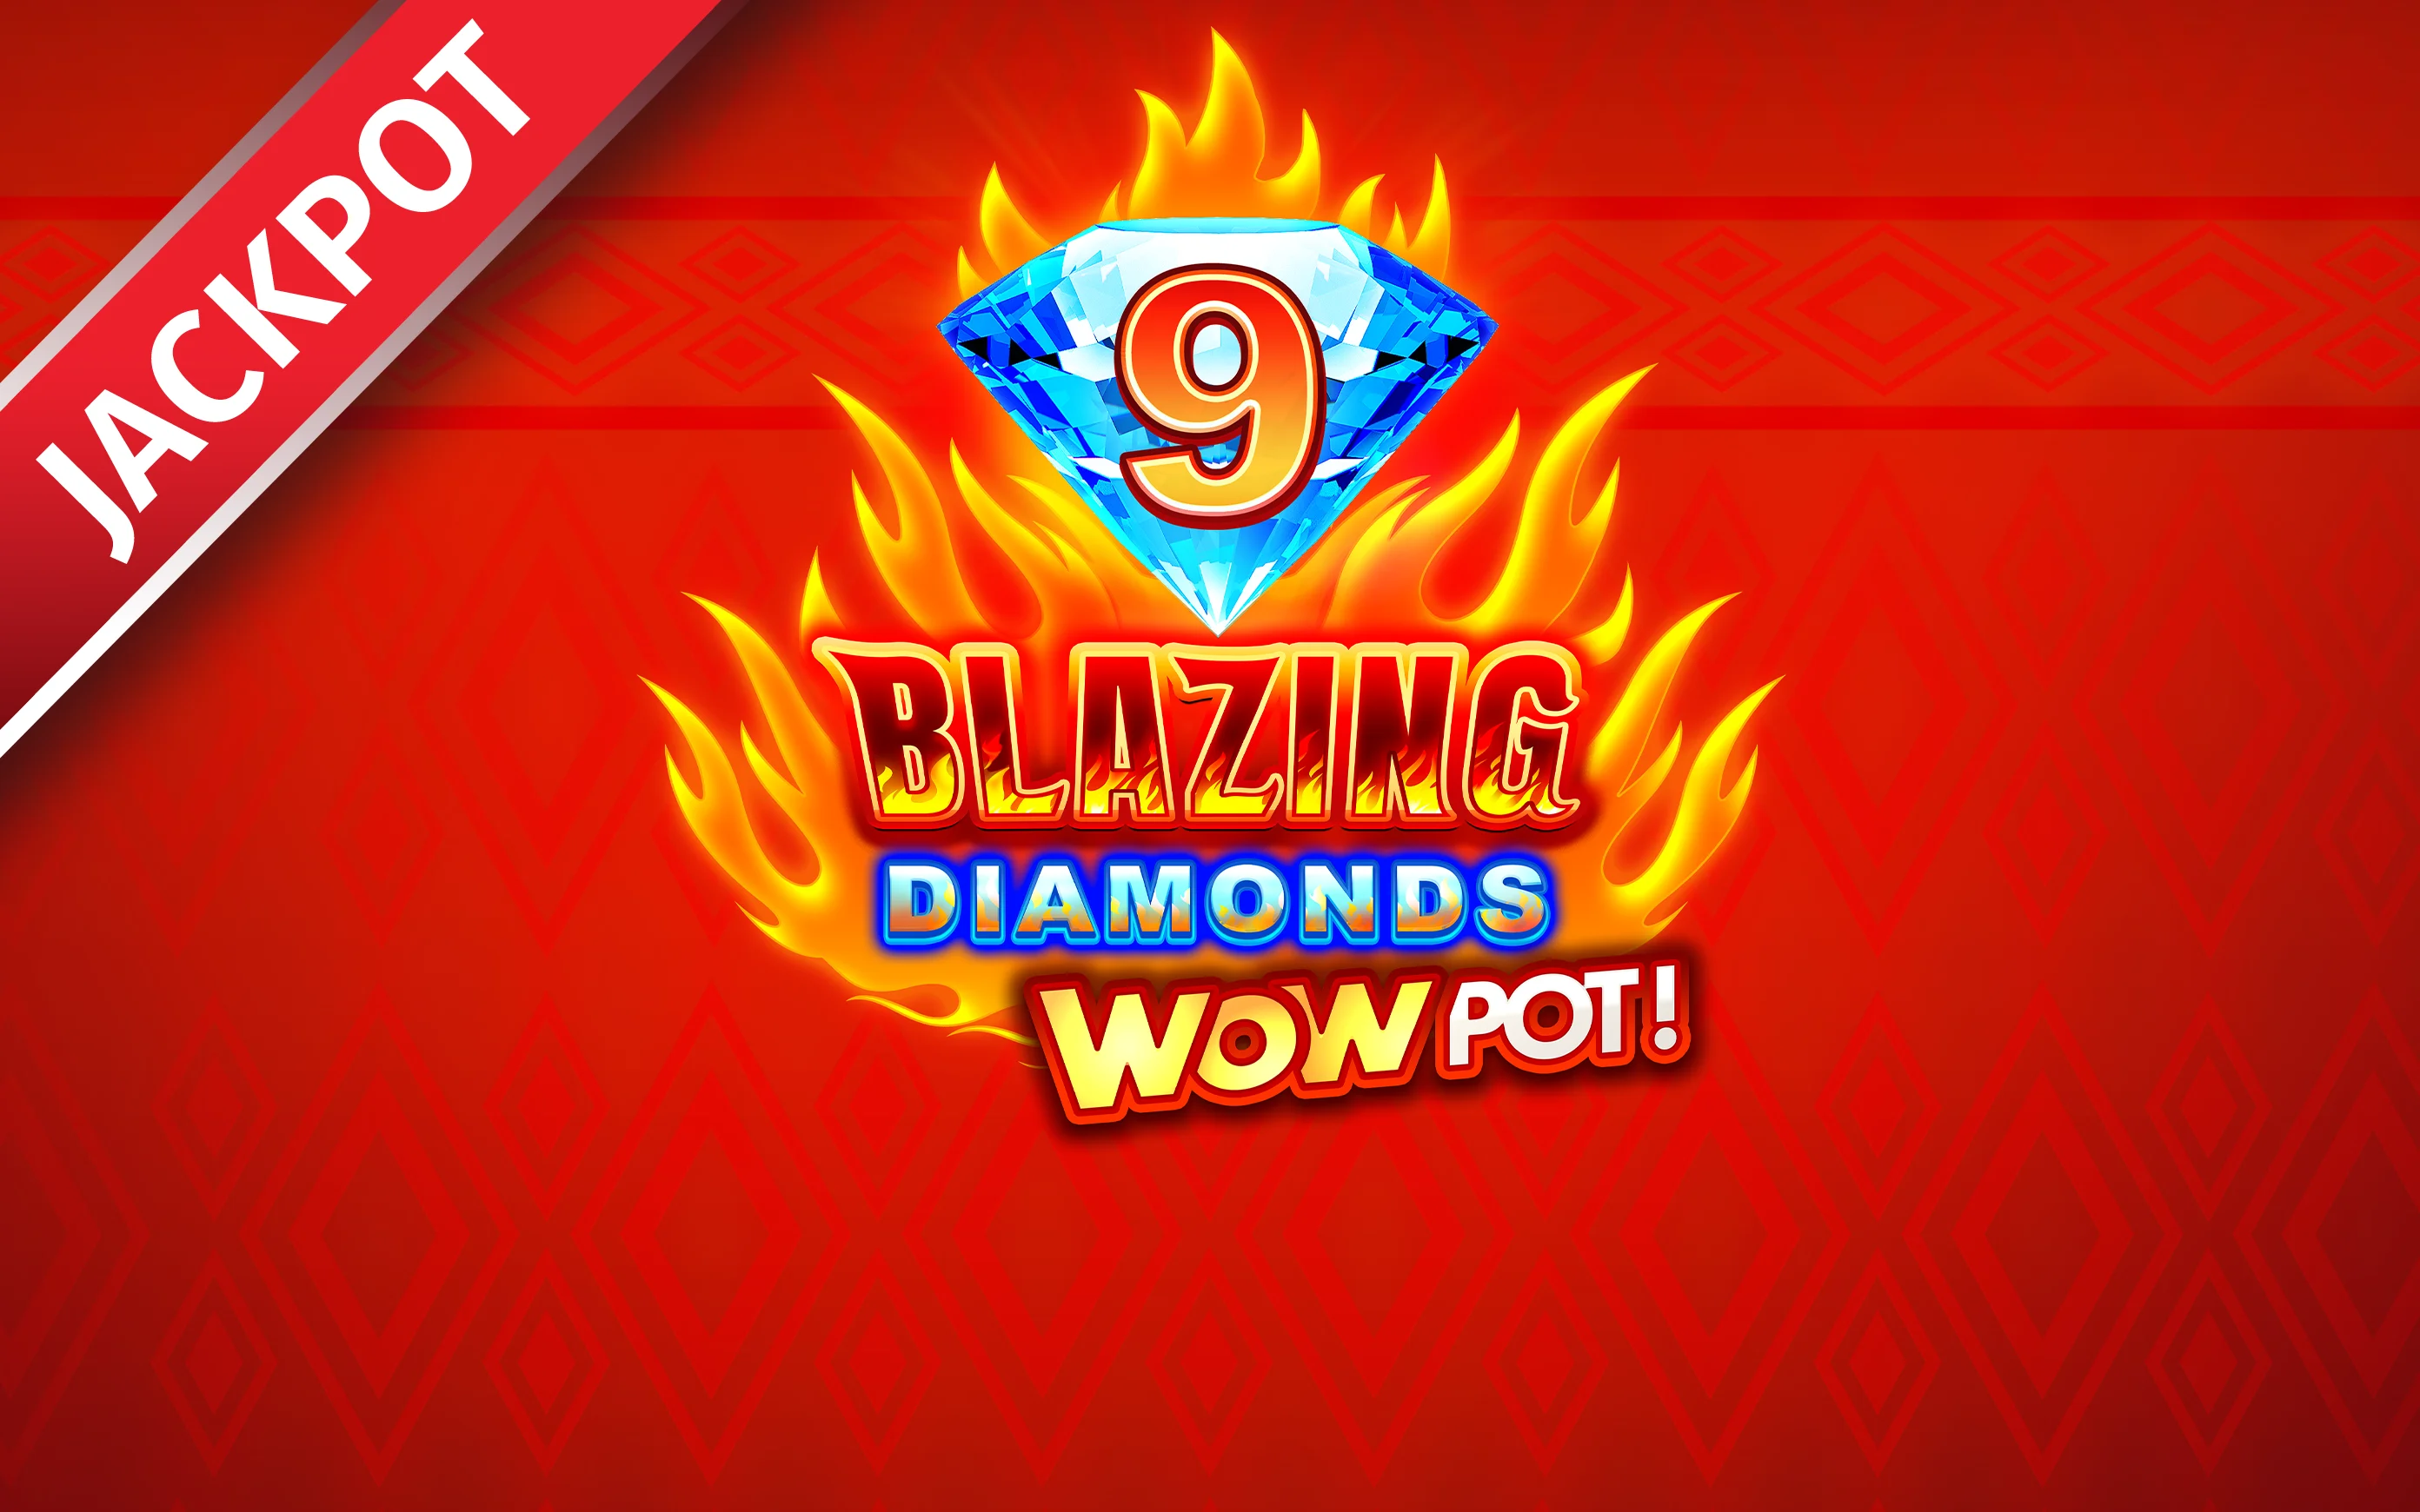 Luaj 9 Blazing Diamonds WOWPOT në kazino Starcasino.be në internet